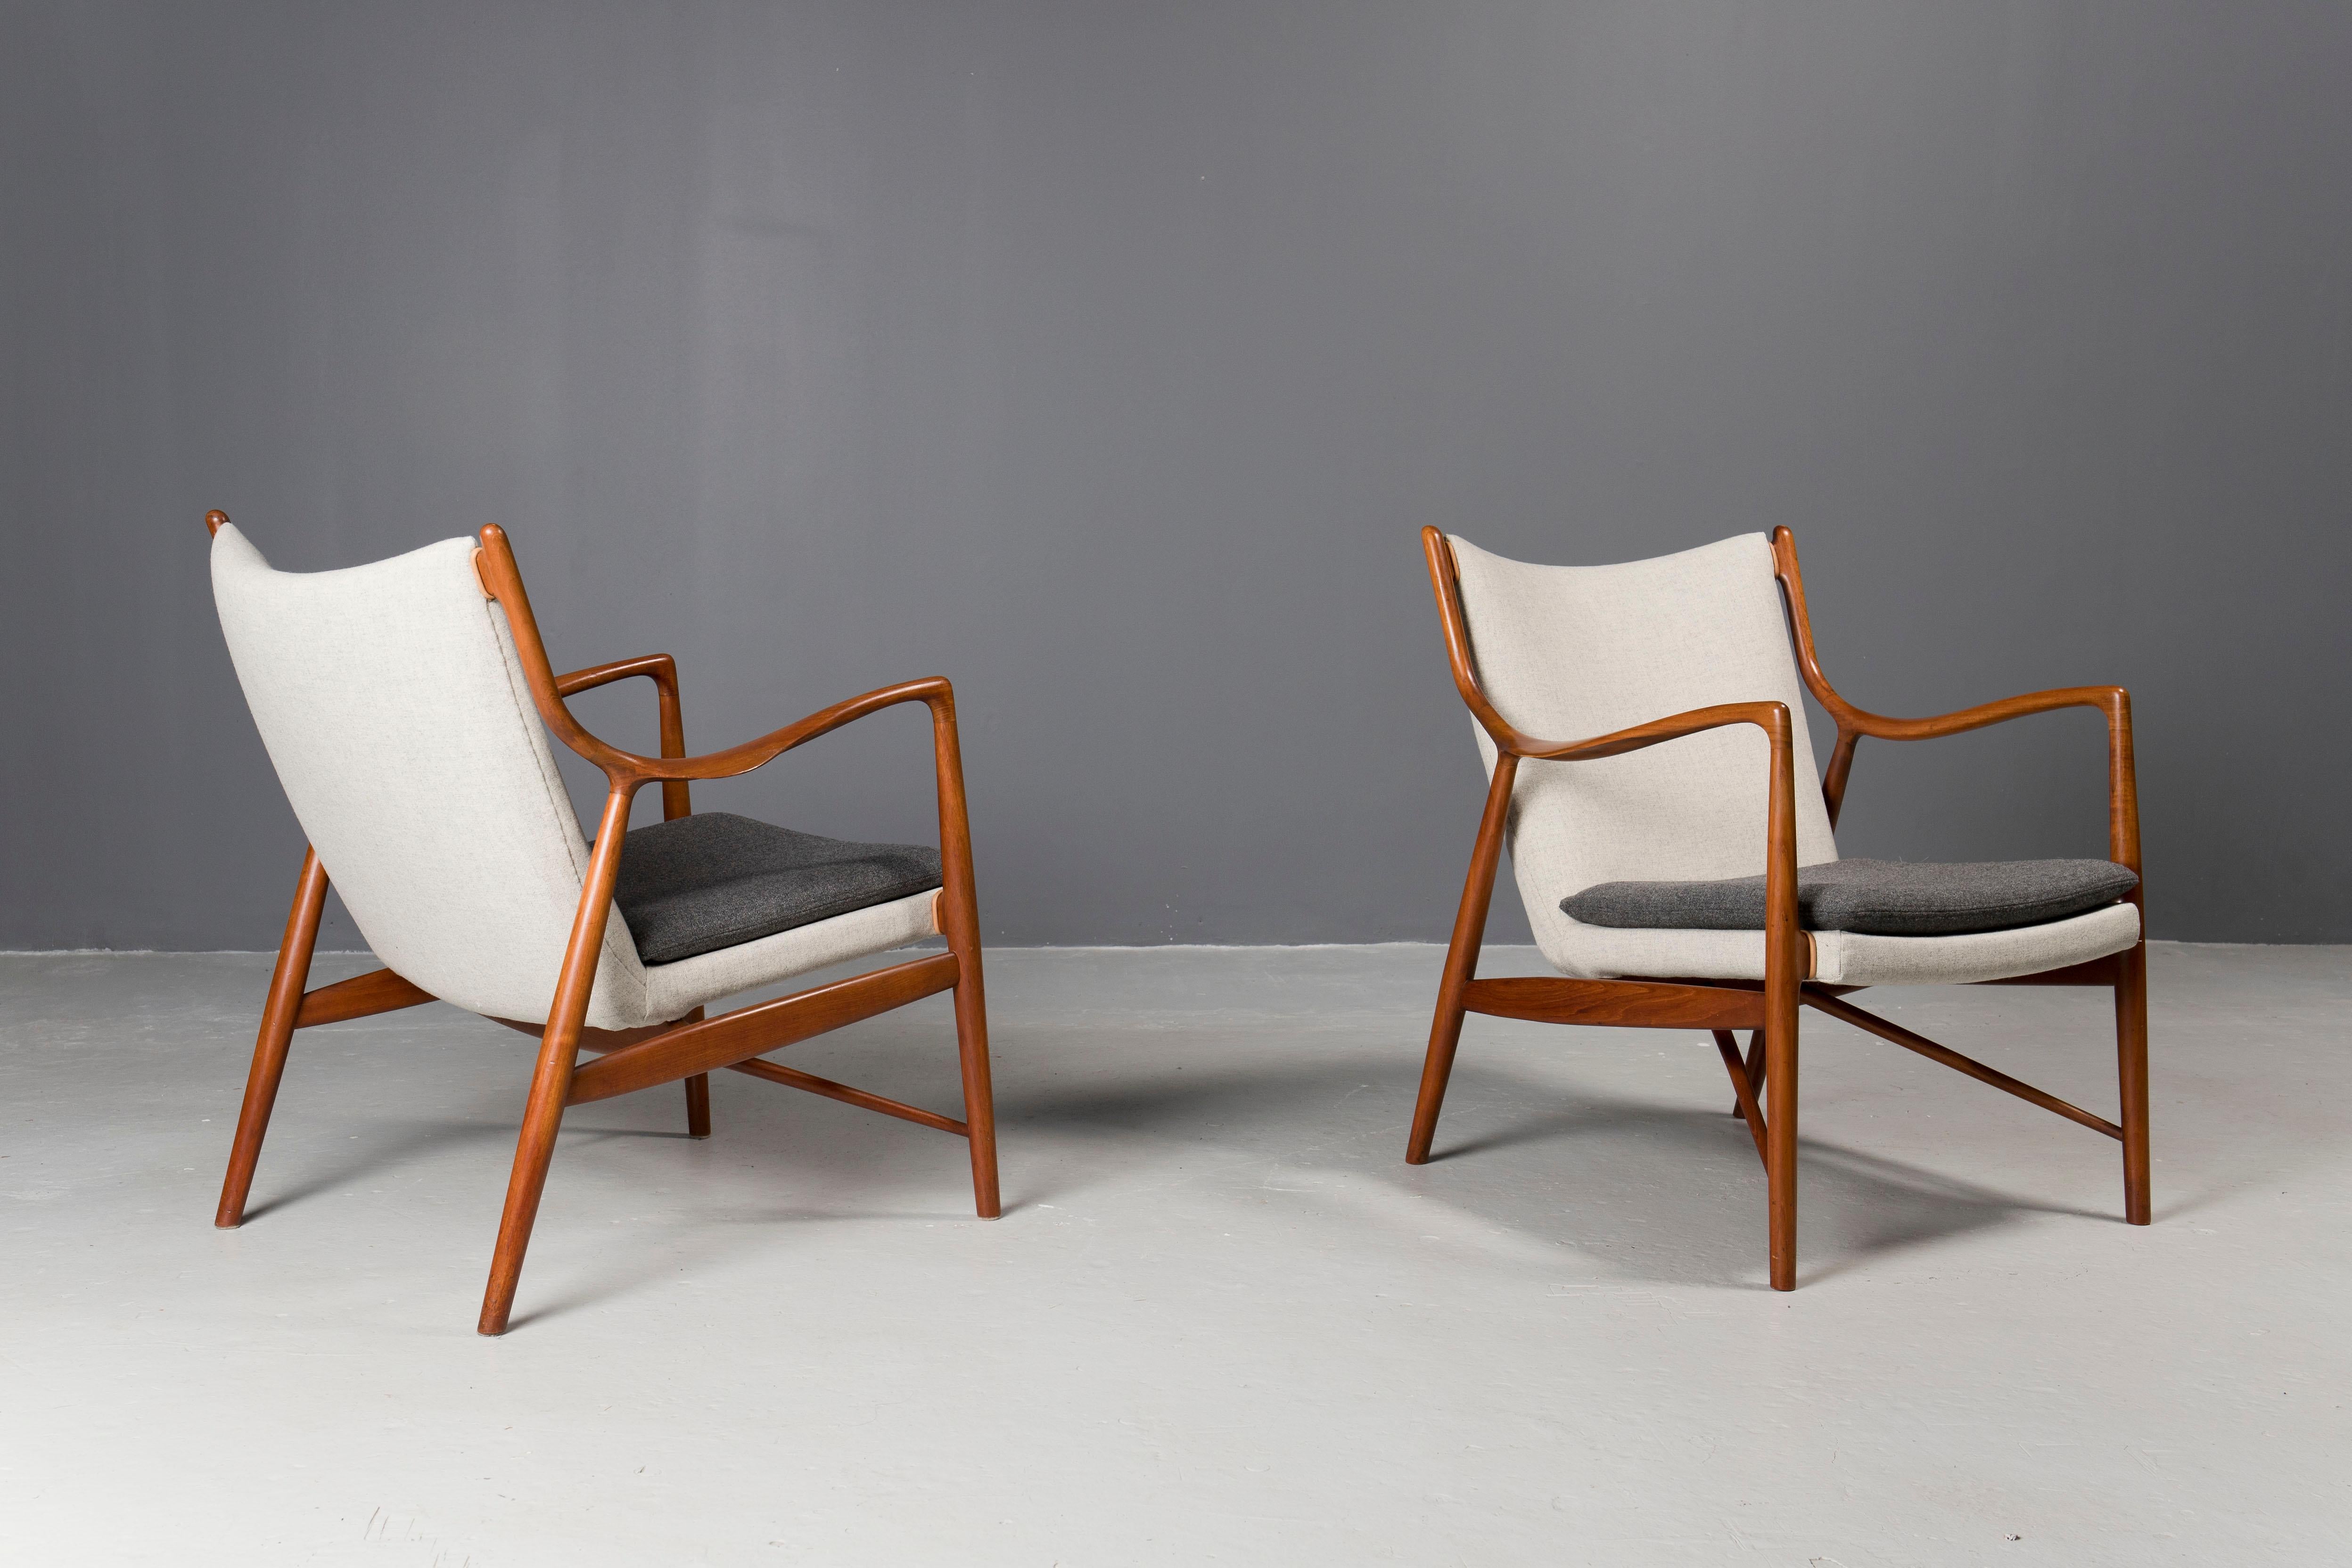 Einer der ikonischsten Entwürfe des dänischen Architekten Finn Juhl,  Dieses Paar von 45 Stühlen wurde Anfang der 1950er Jahre von seinem Tischler Niels Vodder gefertigt.
Die skulpturalen Teakholzrahmen wurden professionell aufgearbeitet und die